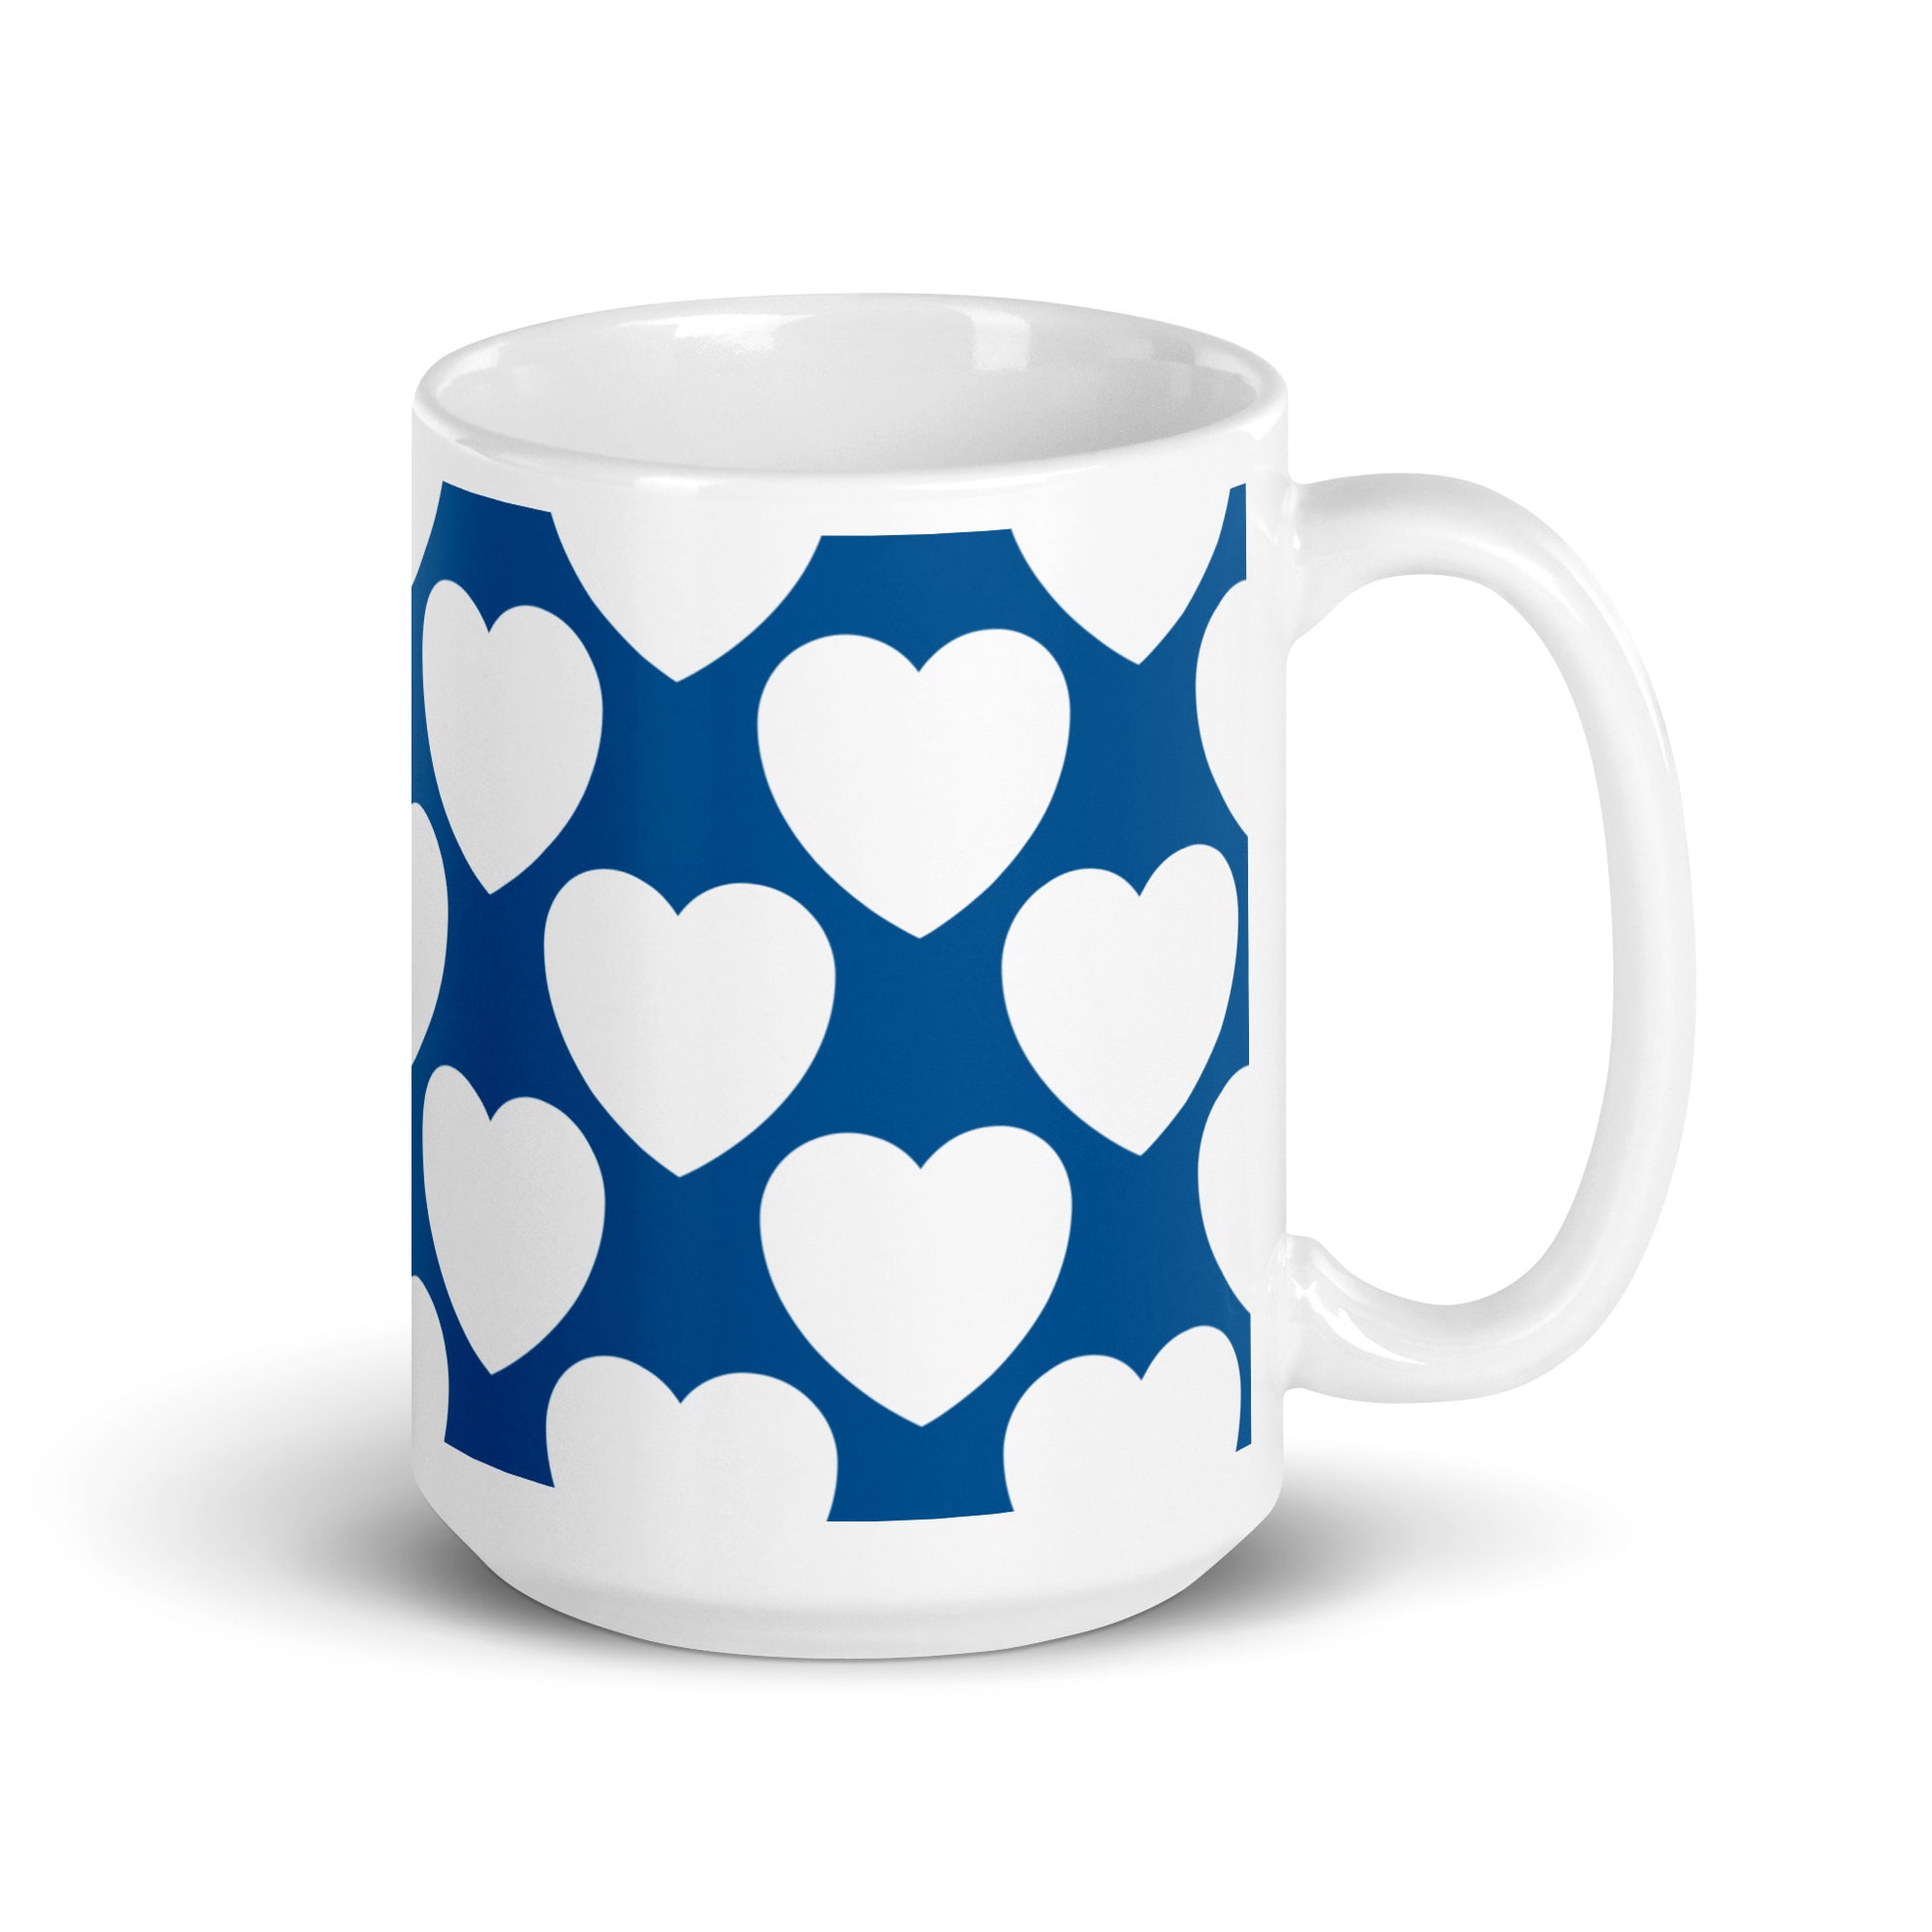 ELLIE LOVE fin - Ceramic Mug